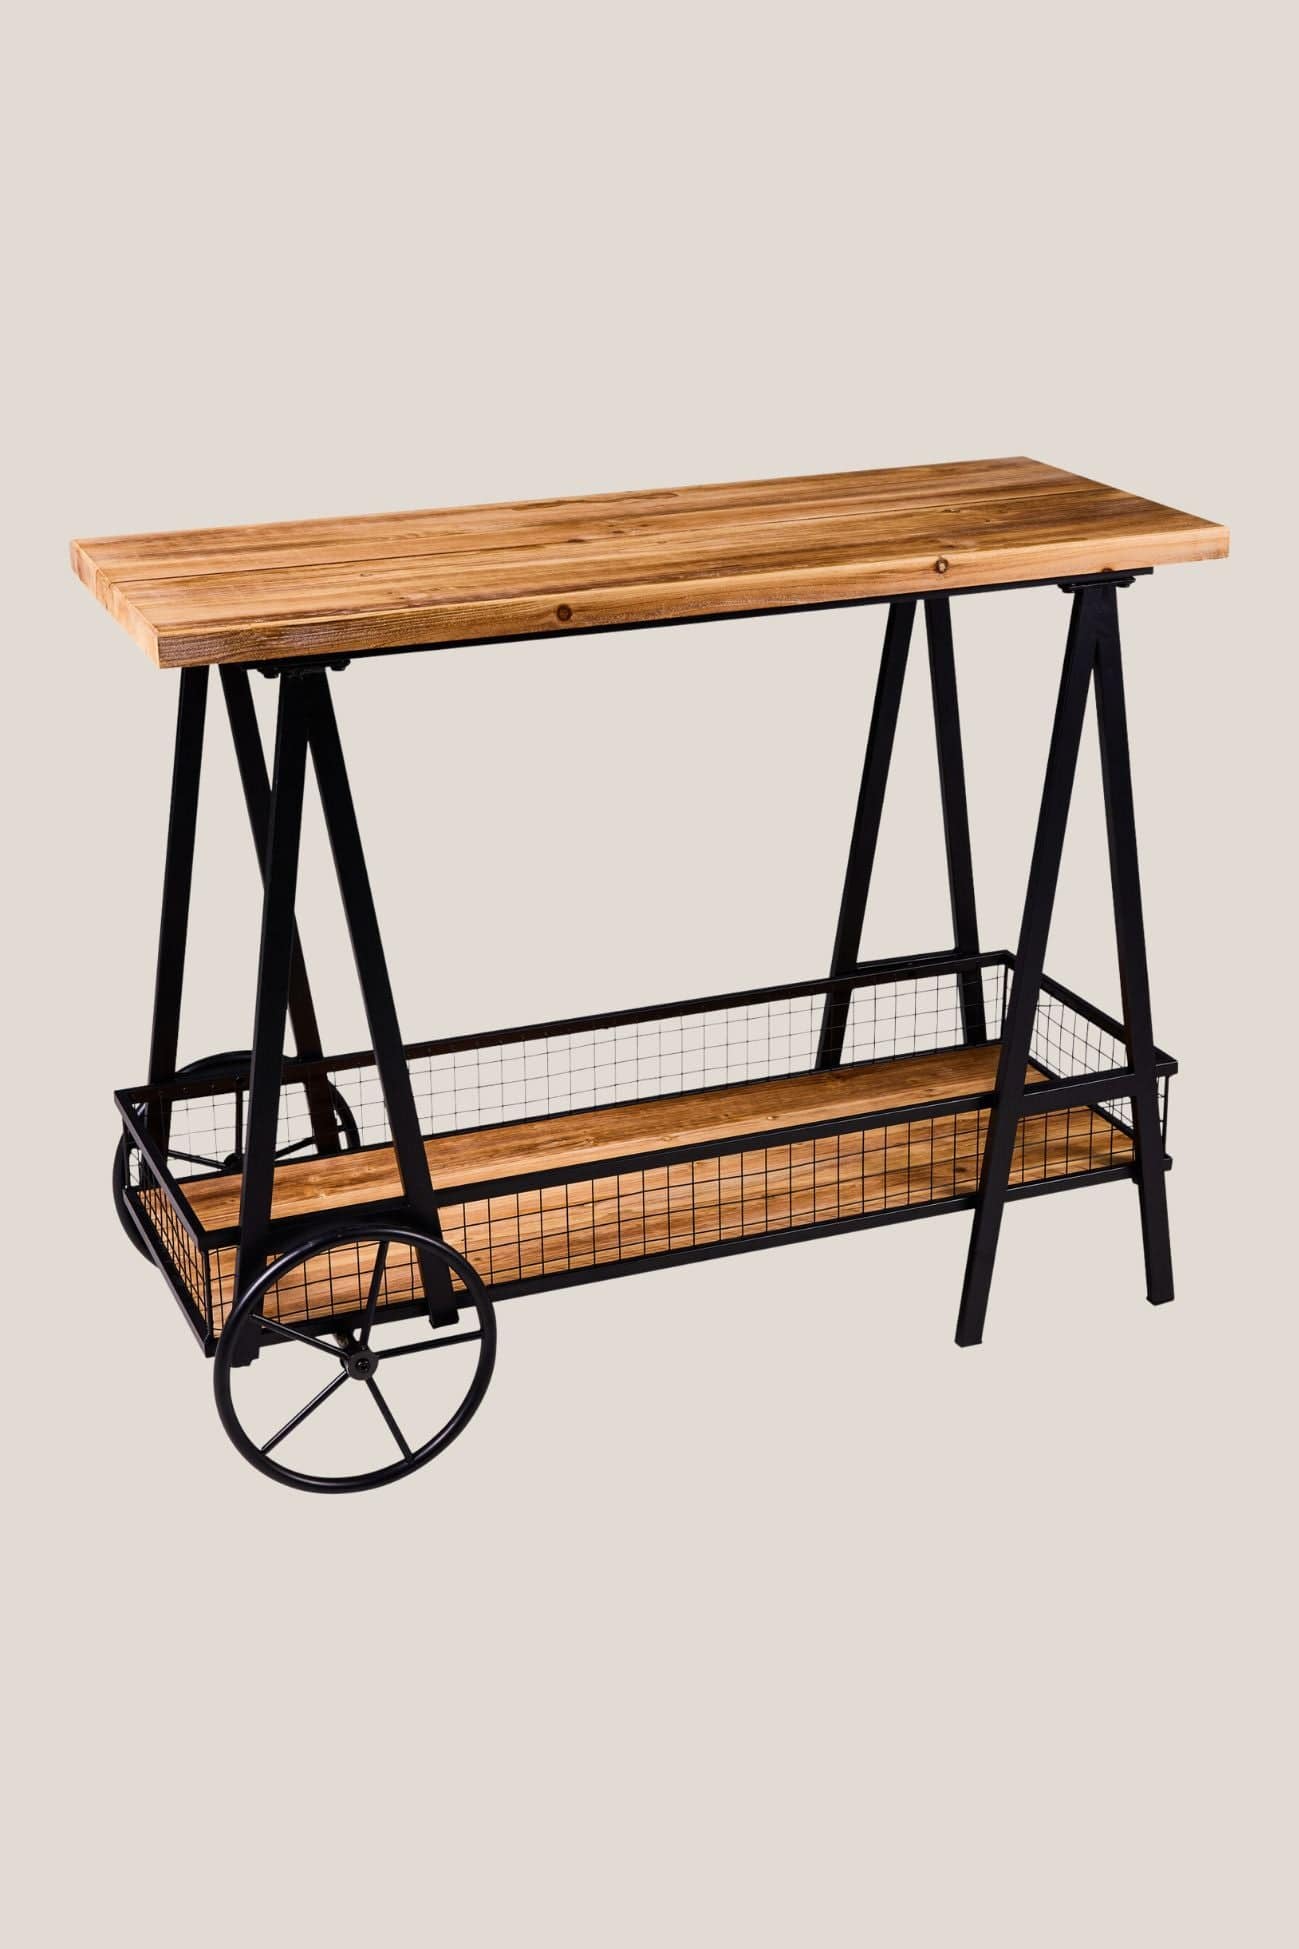 Novità Home Innovation Innovation - Tavolino in legno di abete con ruote e doppio ripiano | Novità Home